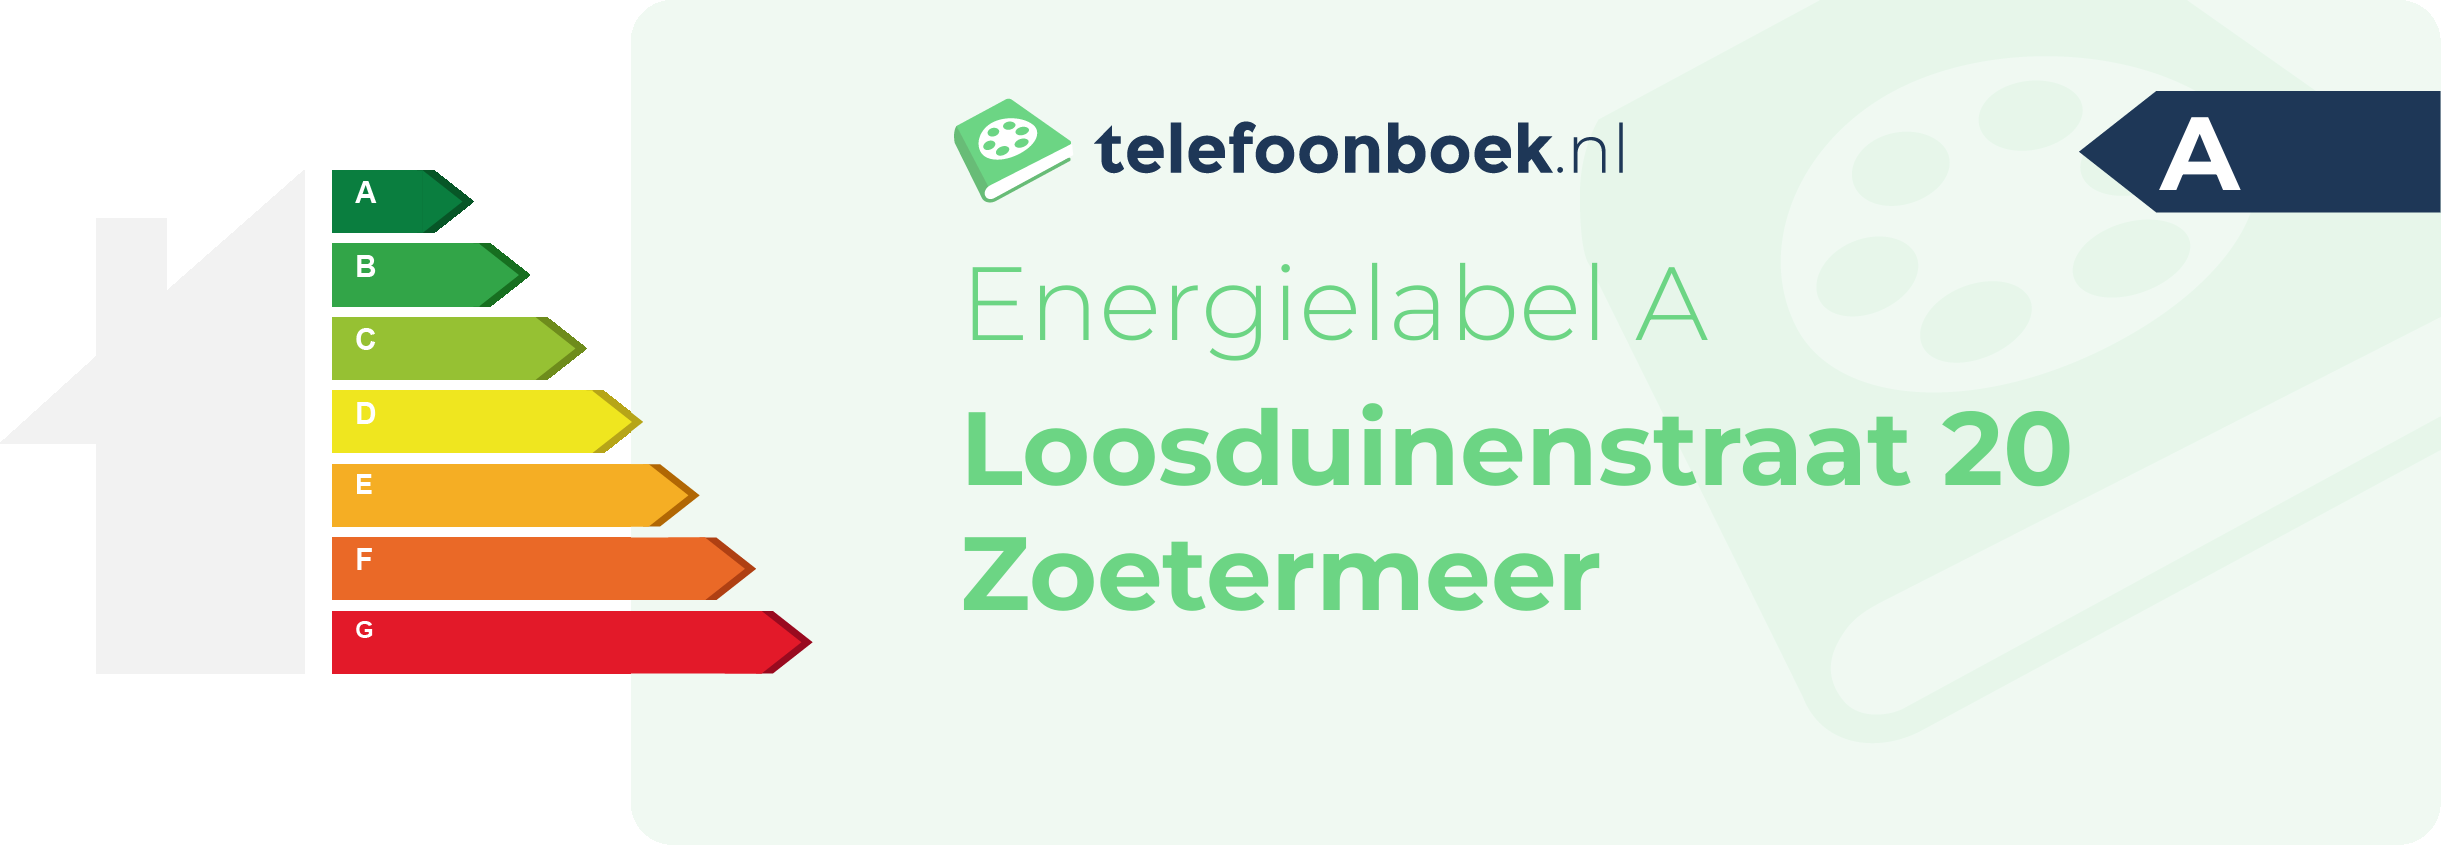 Energielabel Loosduinenstraat 20 Zoetermeer